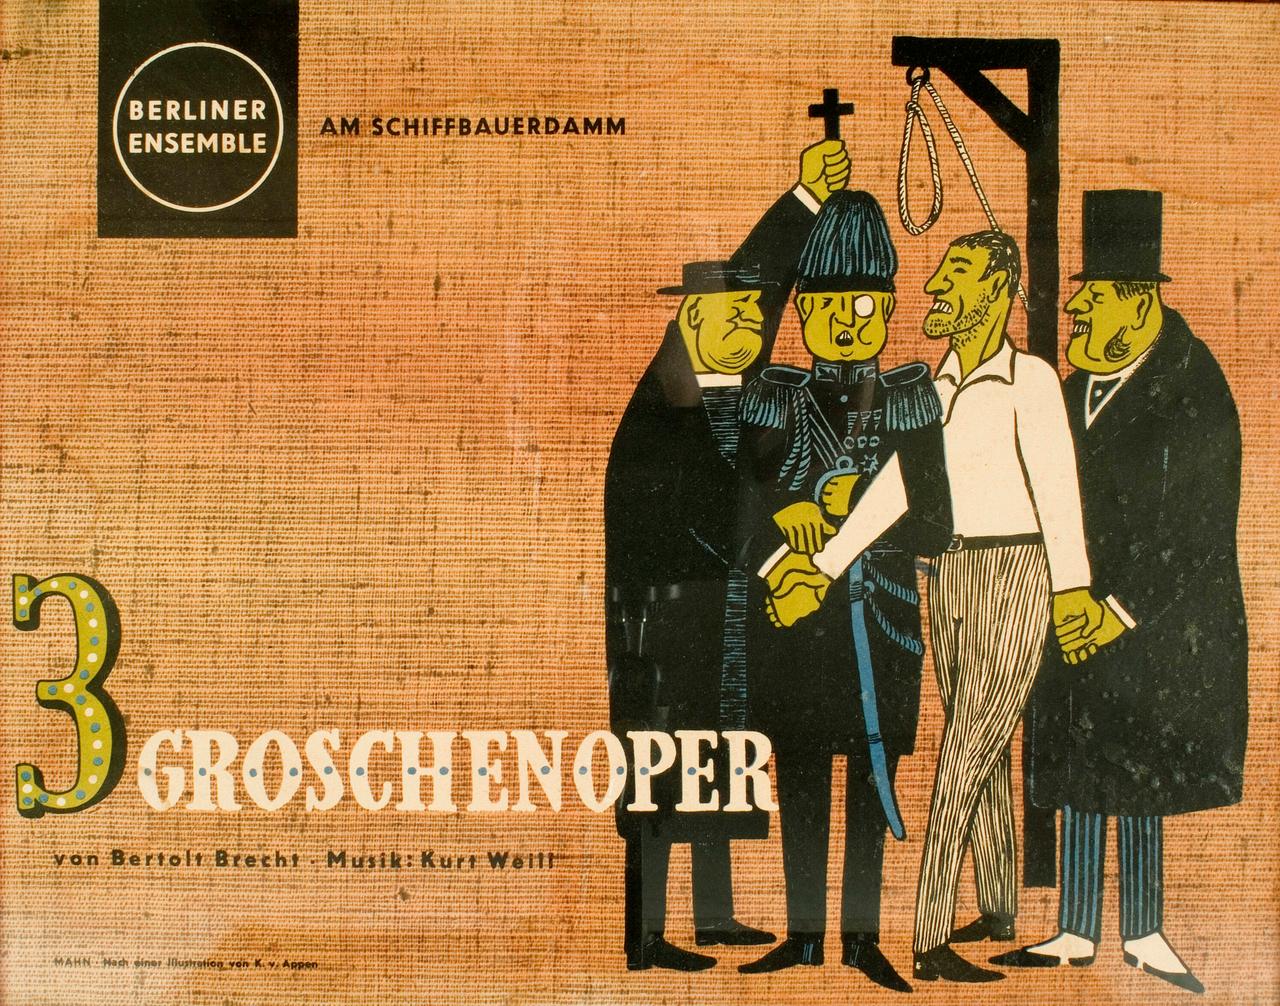 Theaterplakat für die Aufführung der Dreigroschenoper des Berliner Ensembles 1928 am Theater am Schiffbauerdamm in Berlin